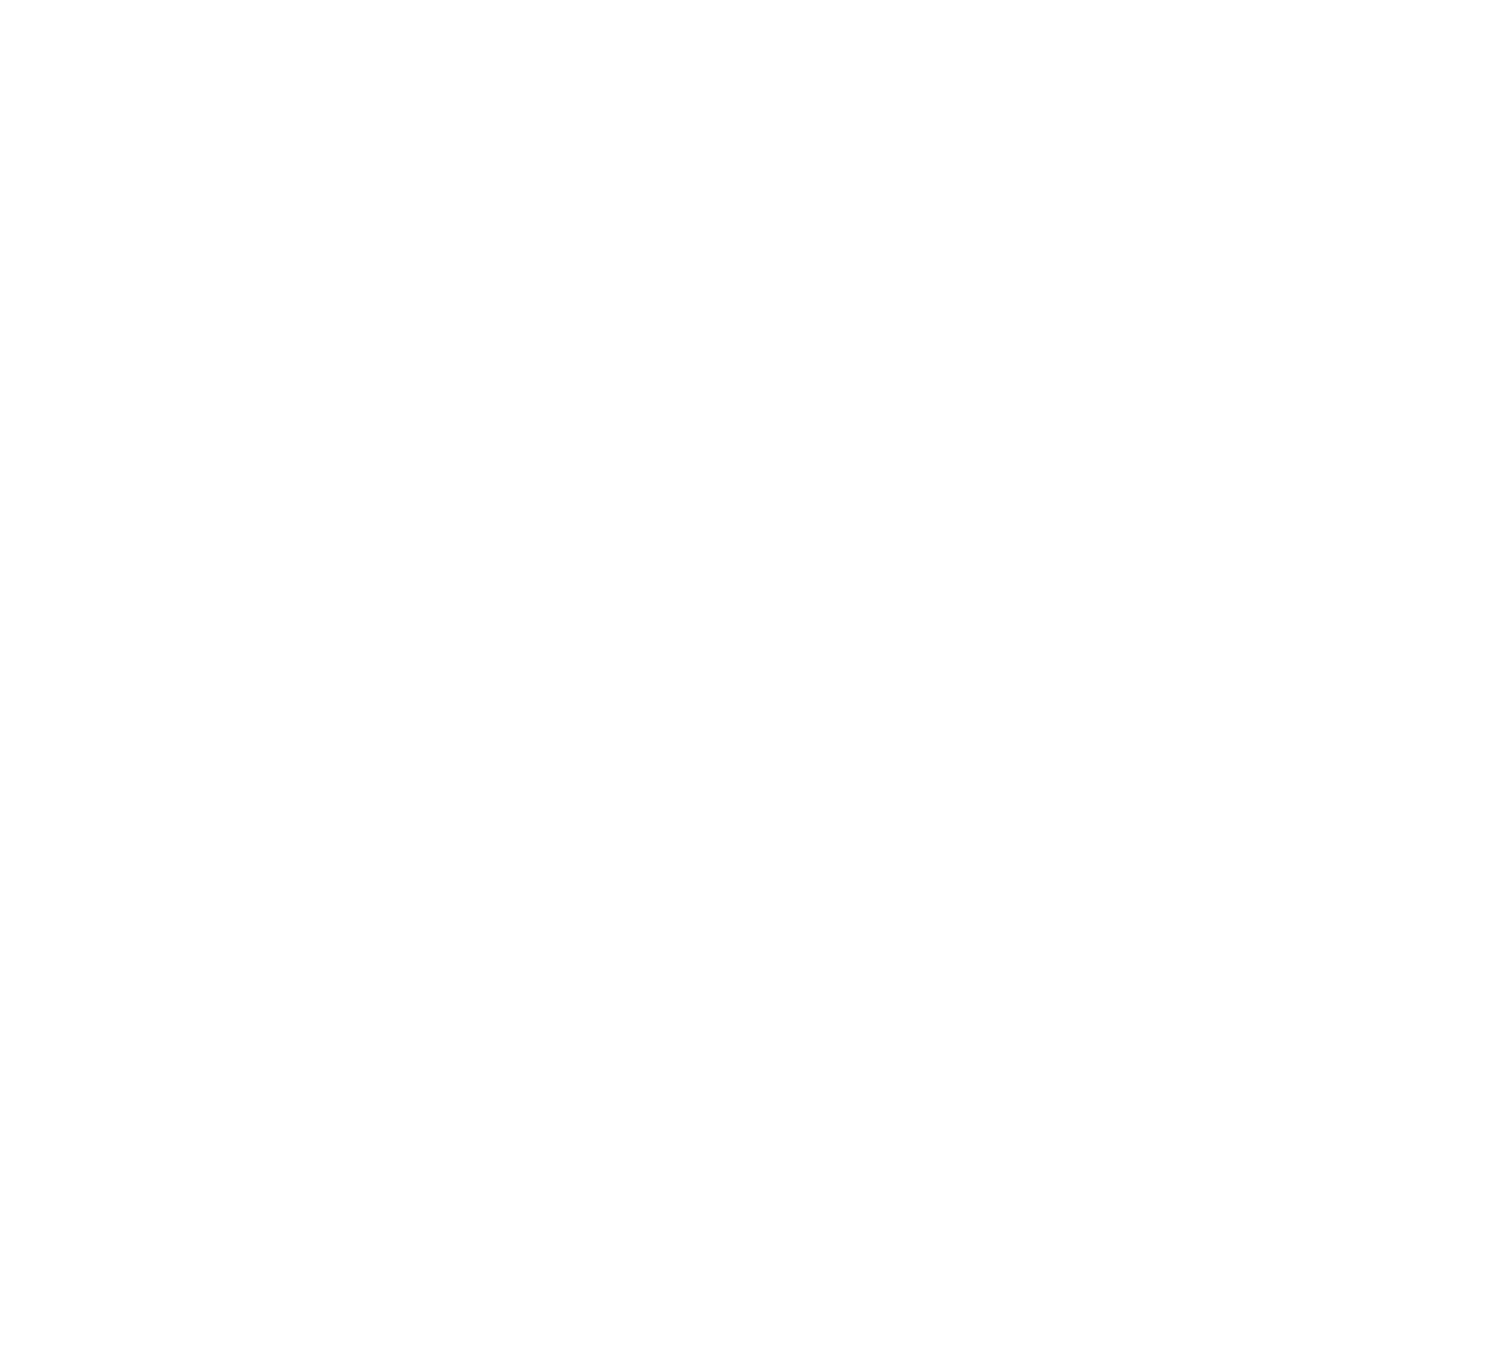 Vestas Wind Systems logo pour fonds sombres (PNG transparent)